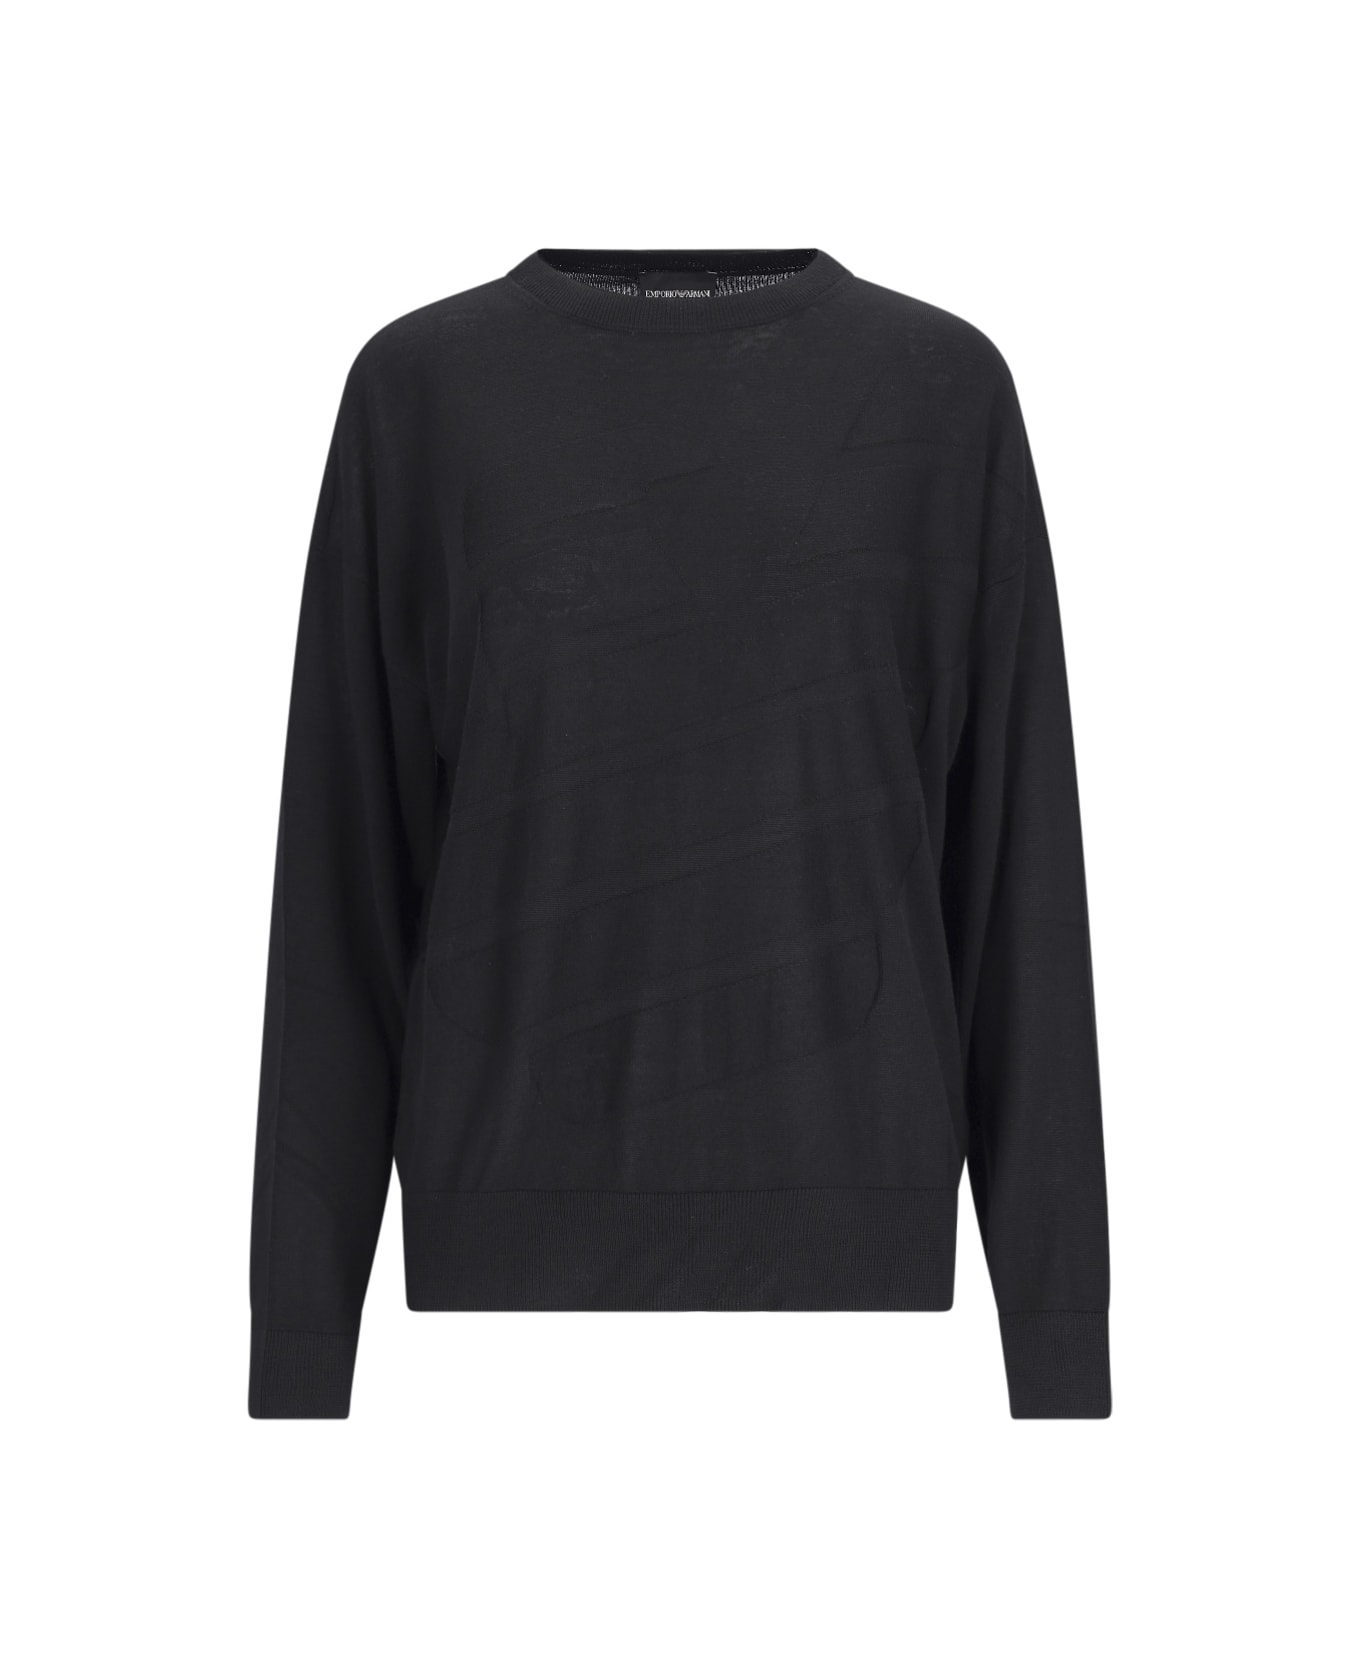 Emporio Armani Crew-neck Sweater - Black ニットウェア